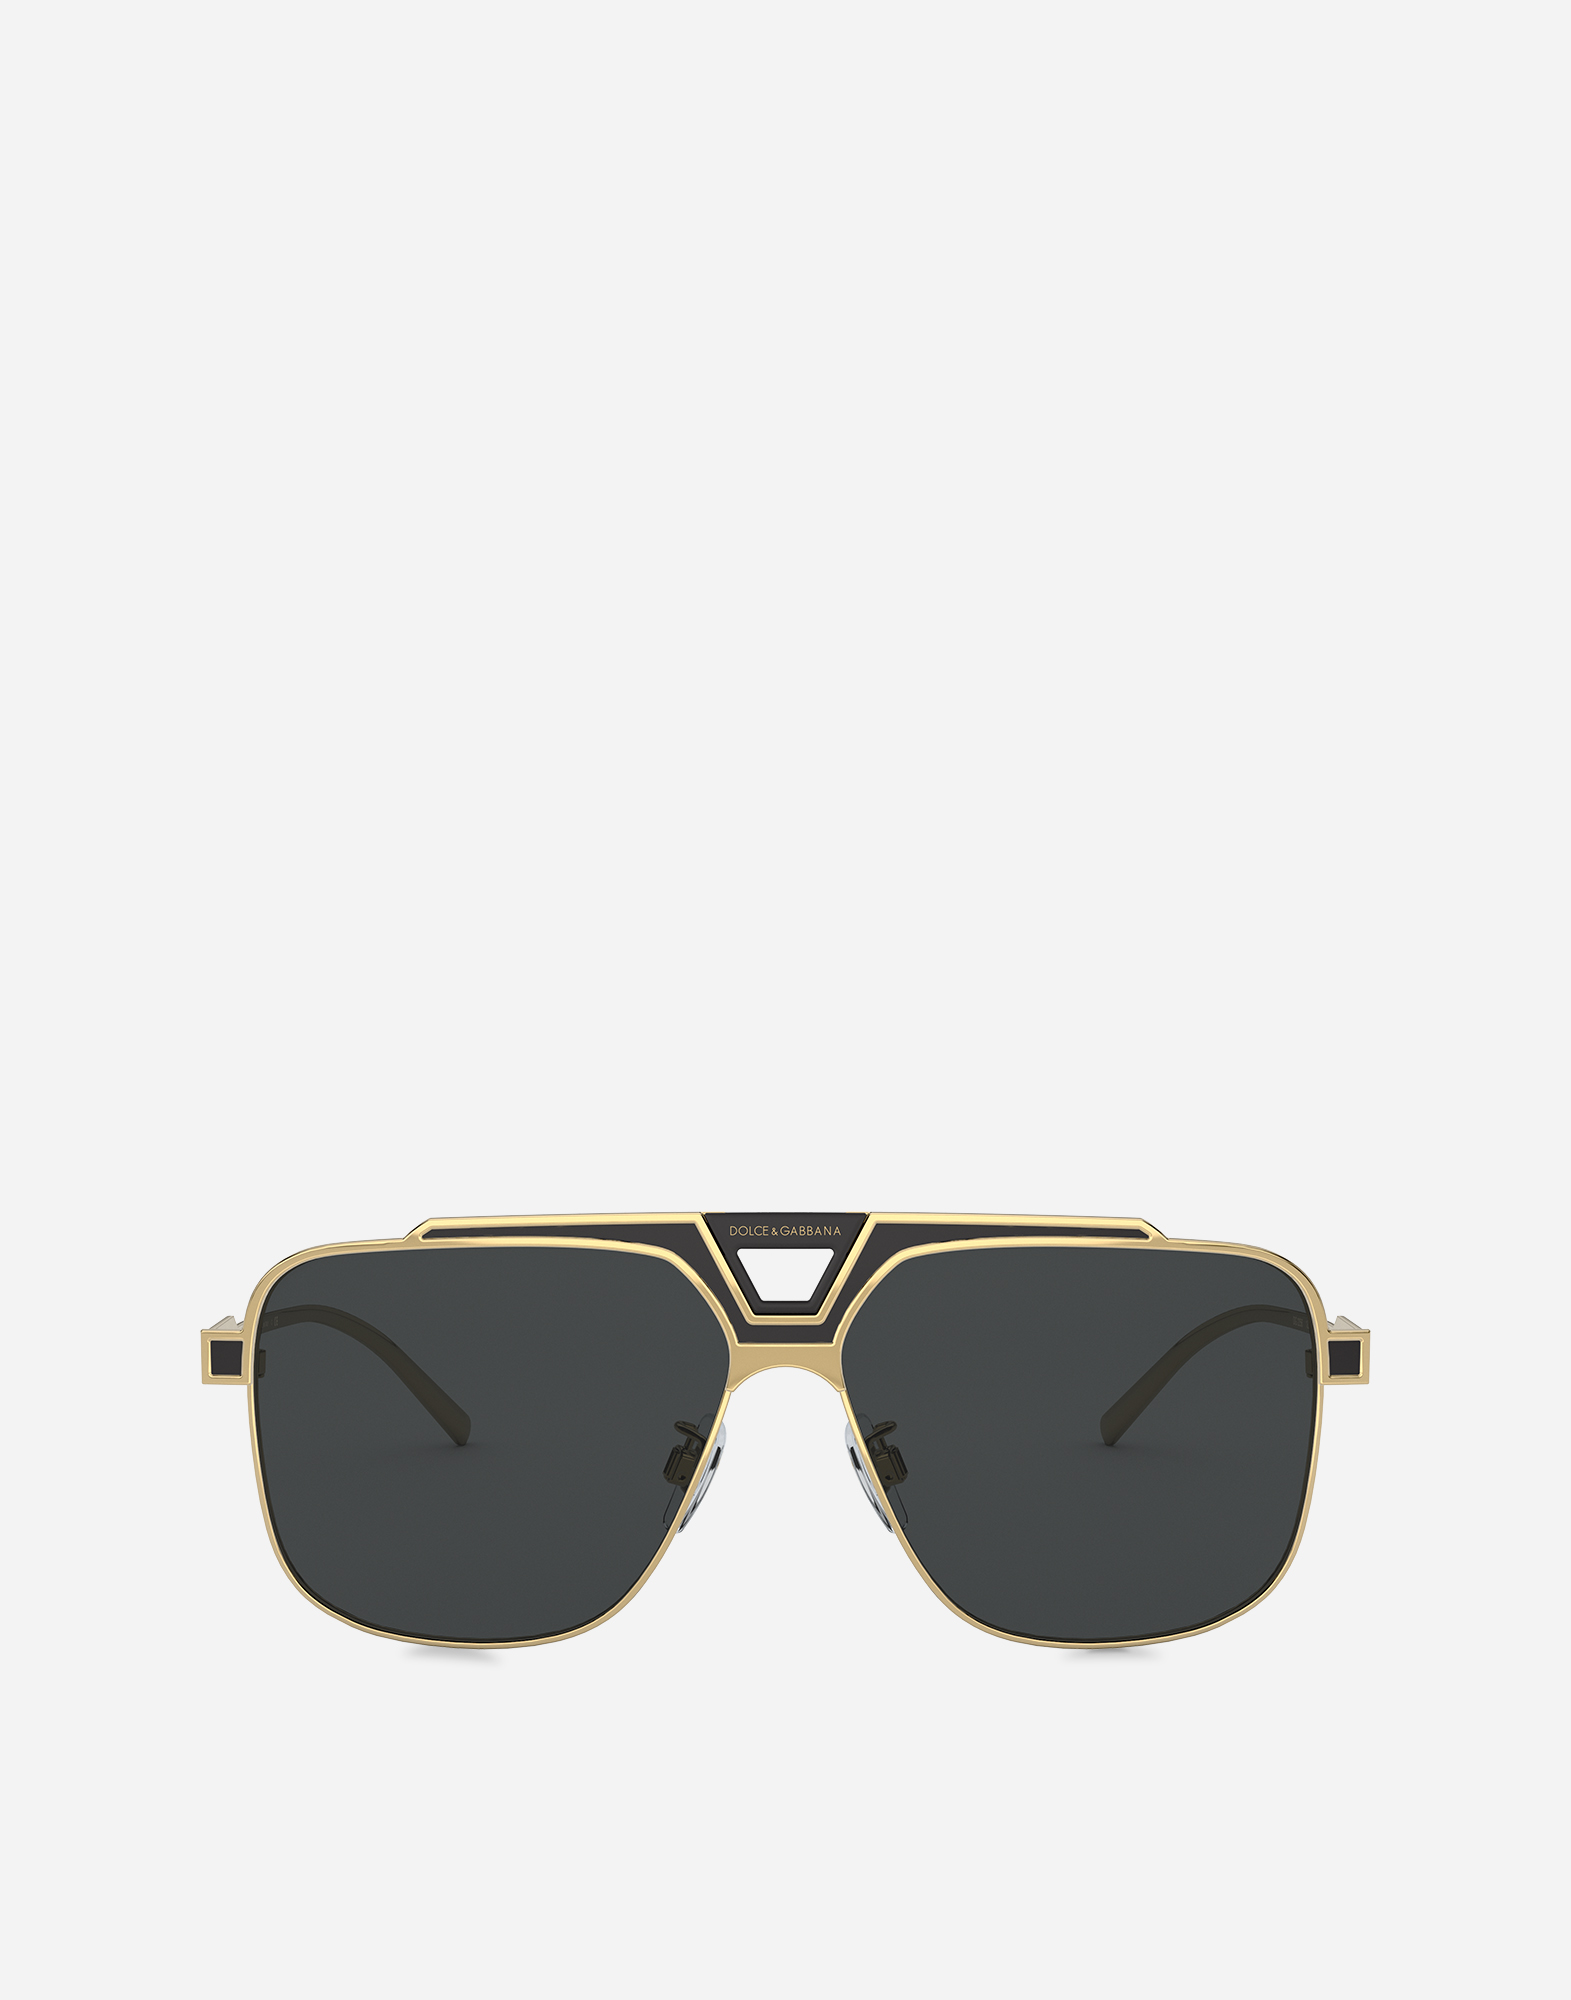 Miami sunglasses